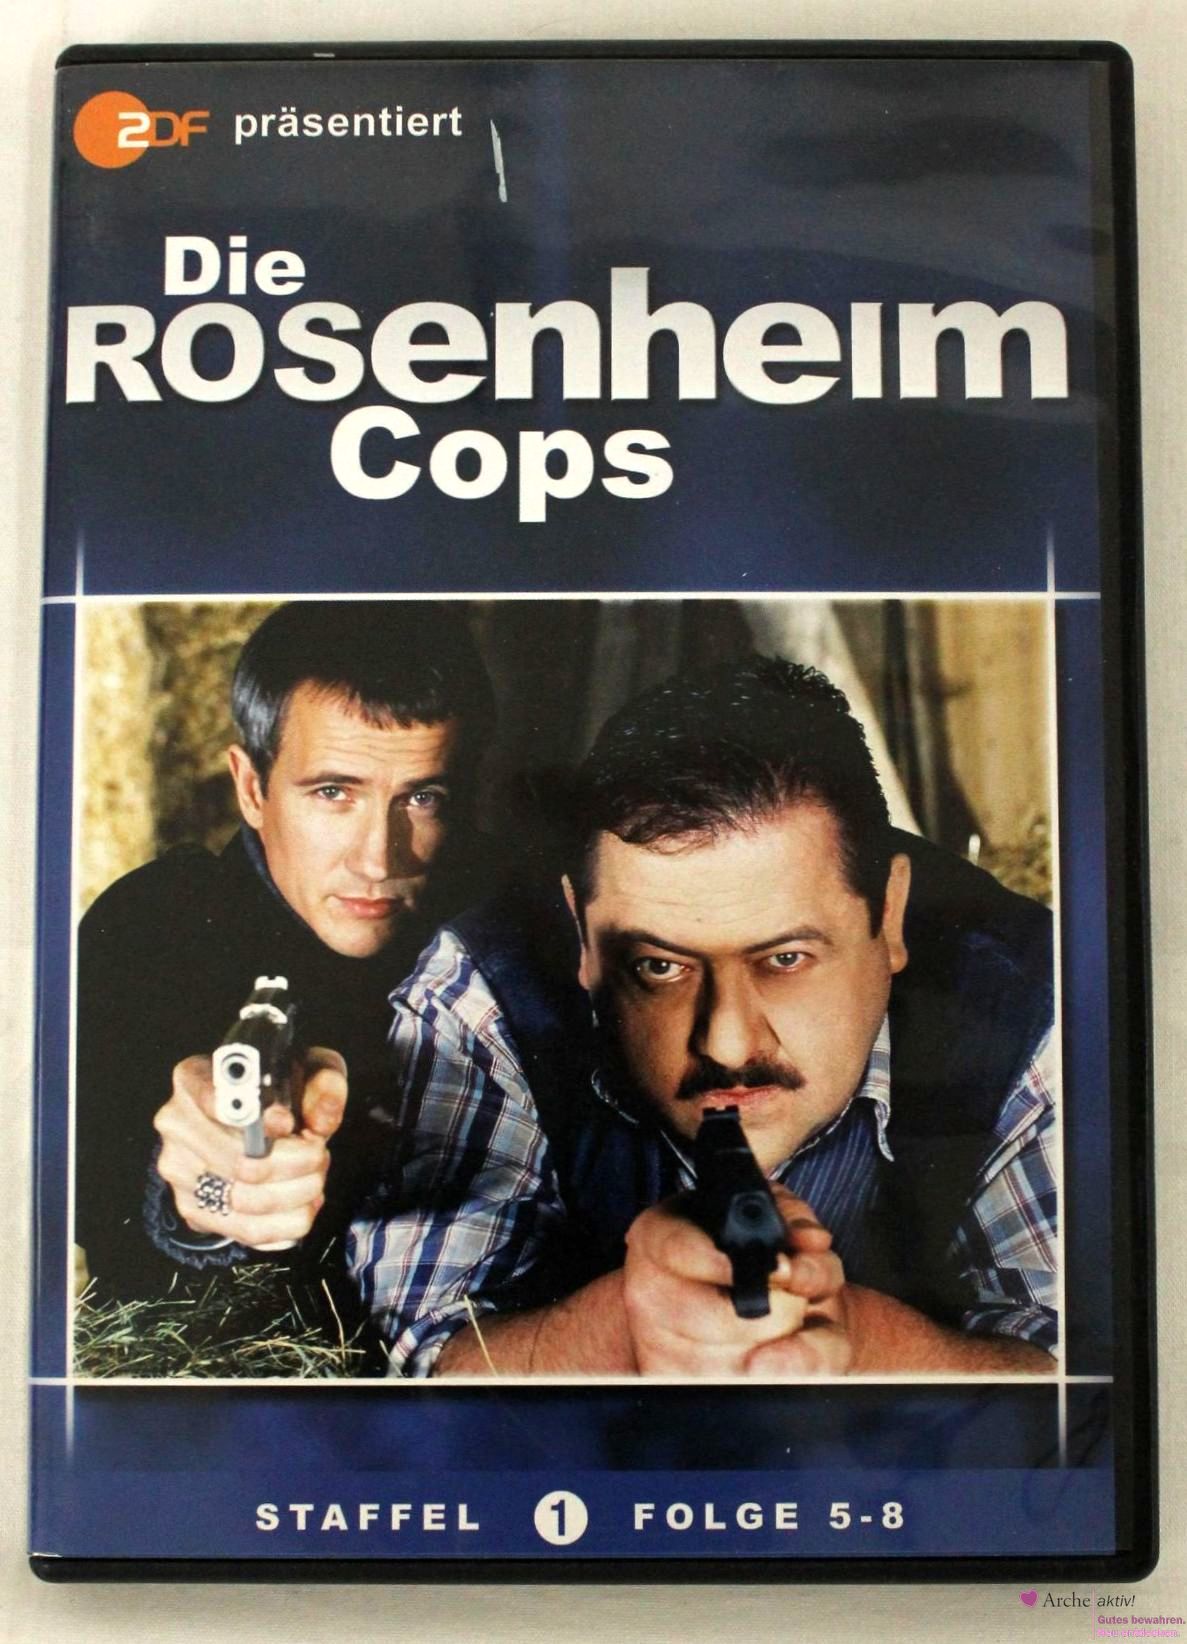 Die Rosenheim Cops Staffel 1 Folge 5-8 auf DVD, gebr,